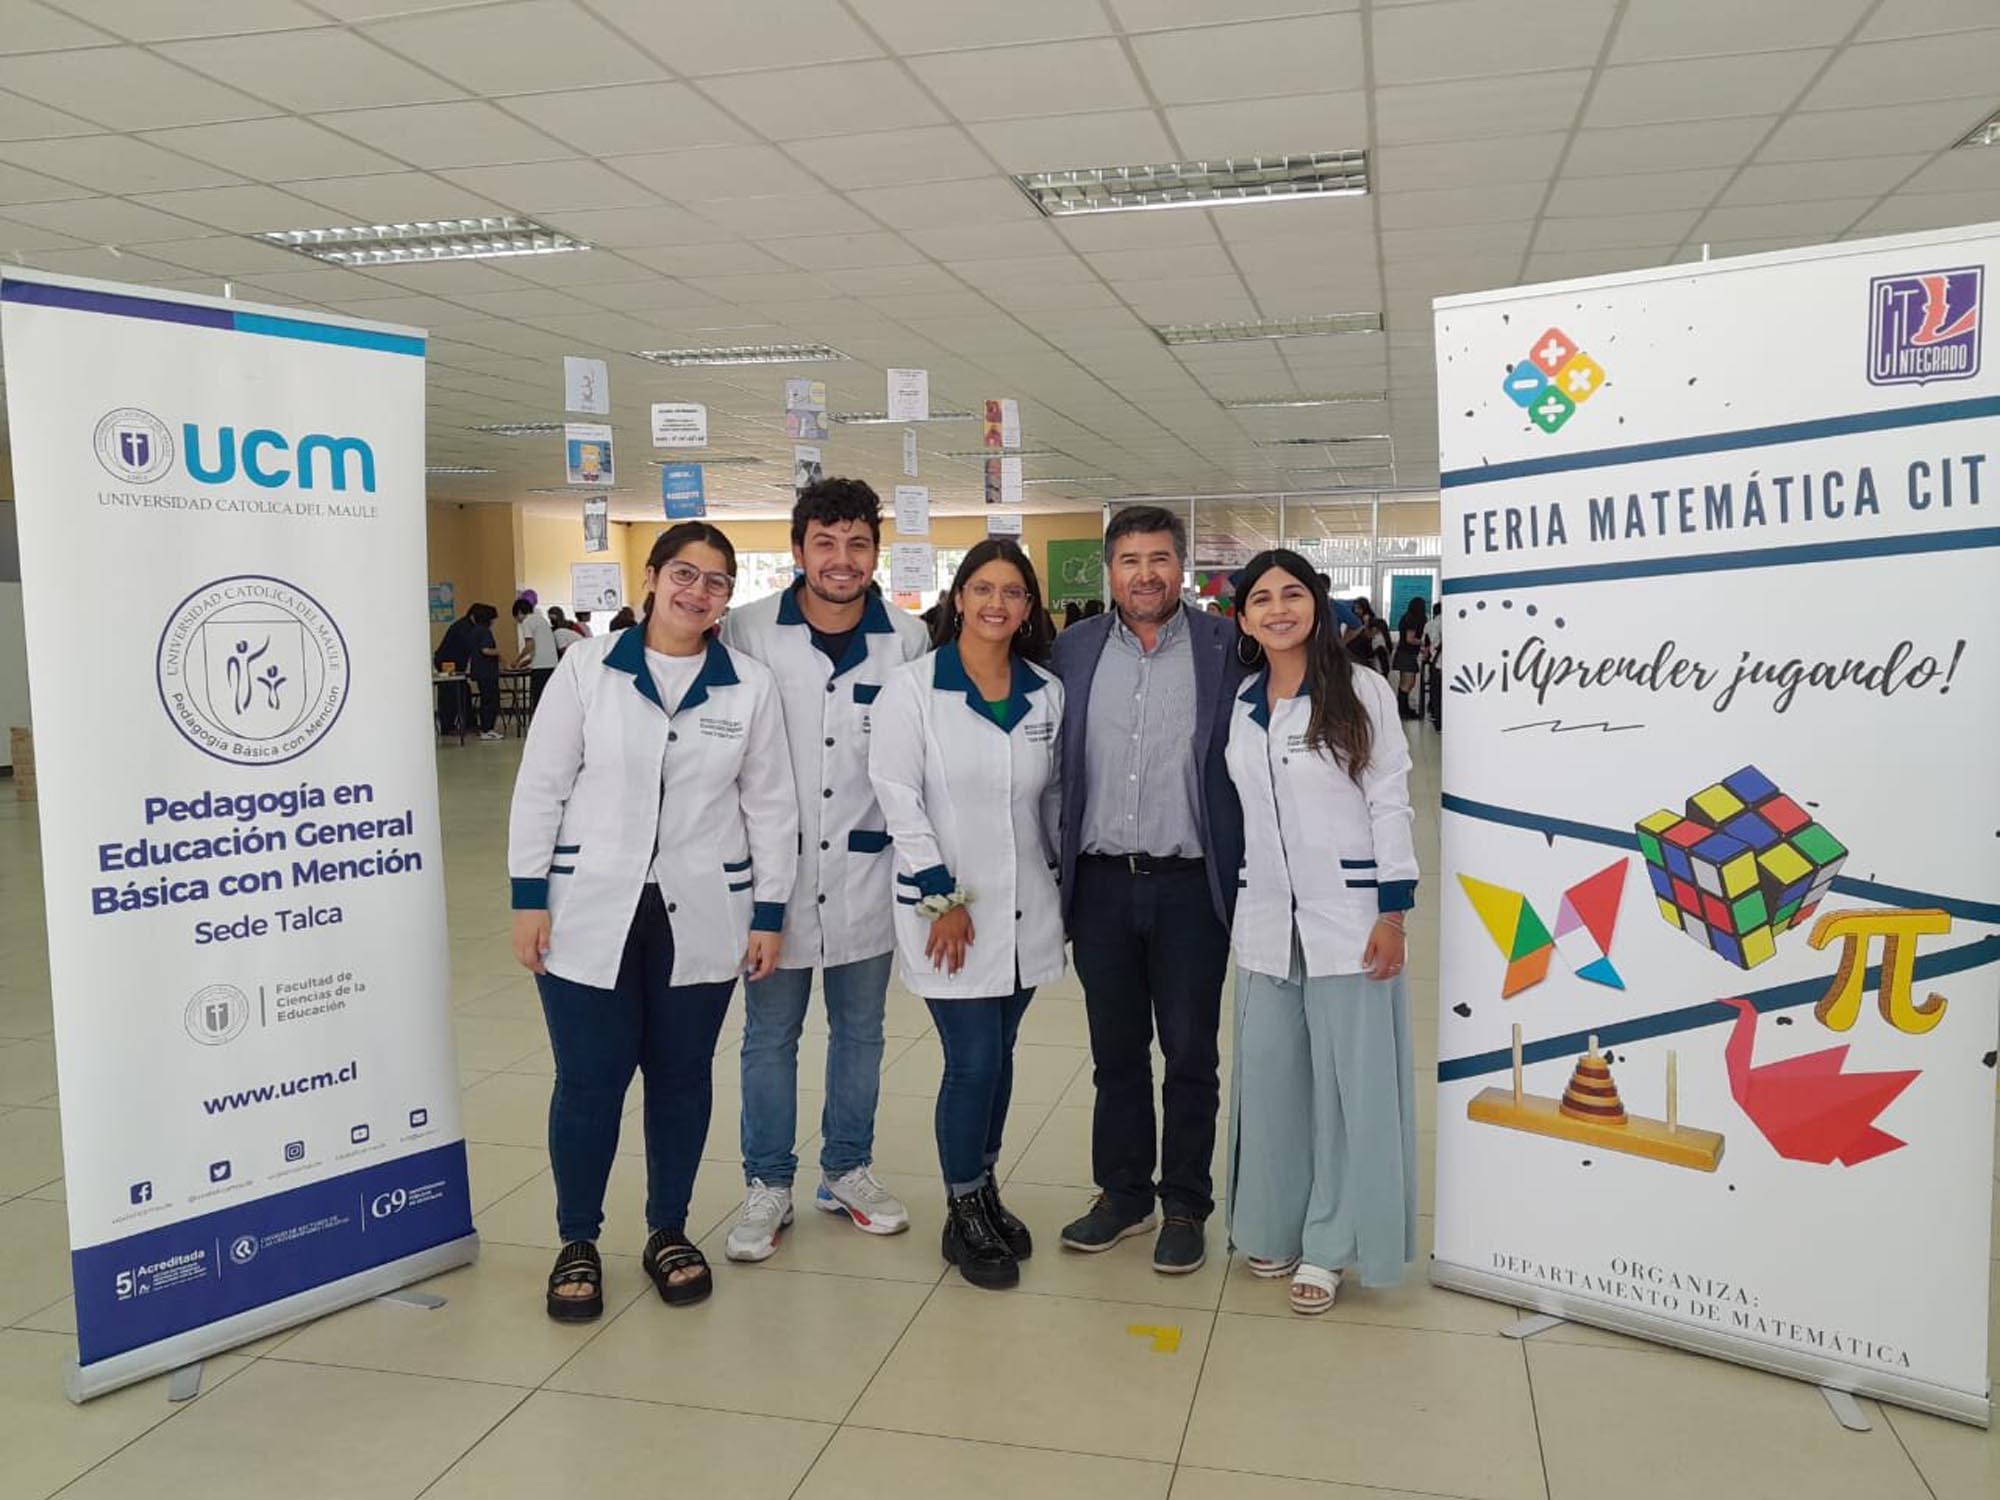 Estudiantes de Prácticas de Pedagogía en Educación General Básica con mención realizaron Feria de Matemáticas en el Colegio Integrado de Talca